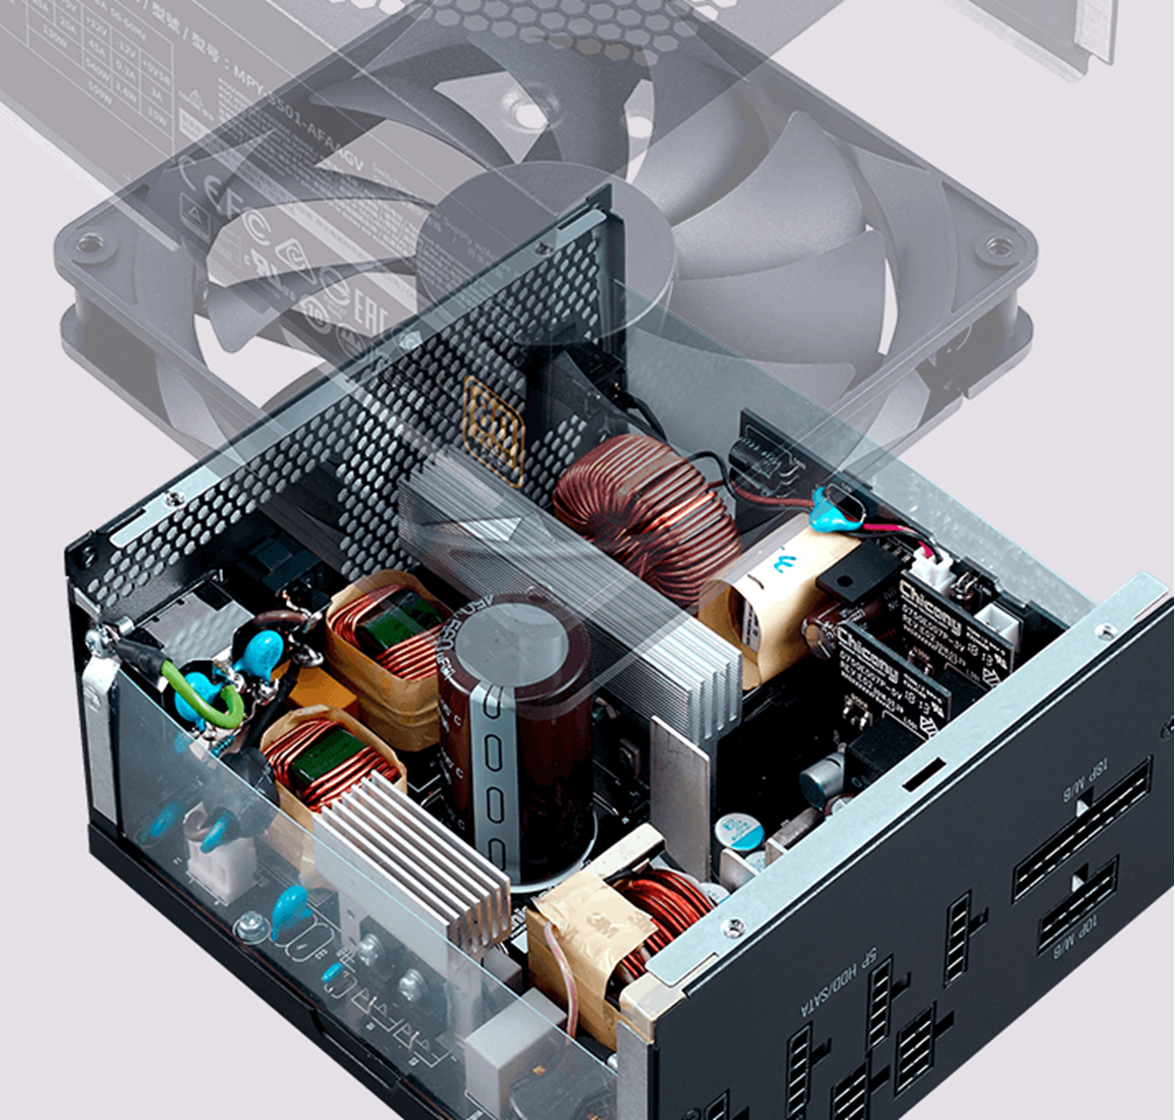 V750 Gold 750W Semi-Fanless Full-Modular Power Supply | Cooler Master